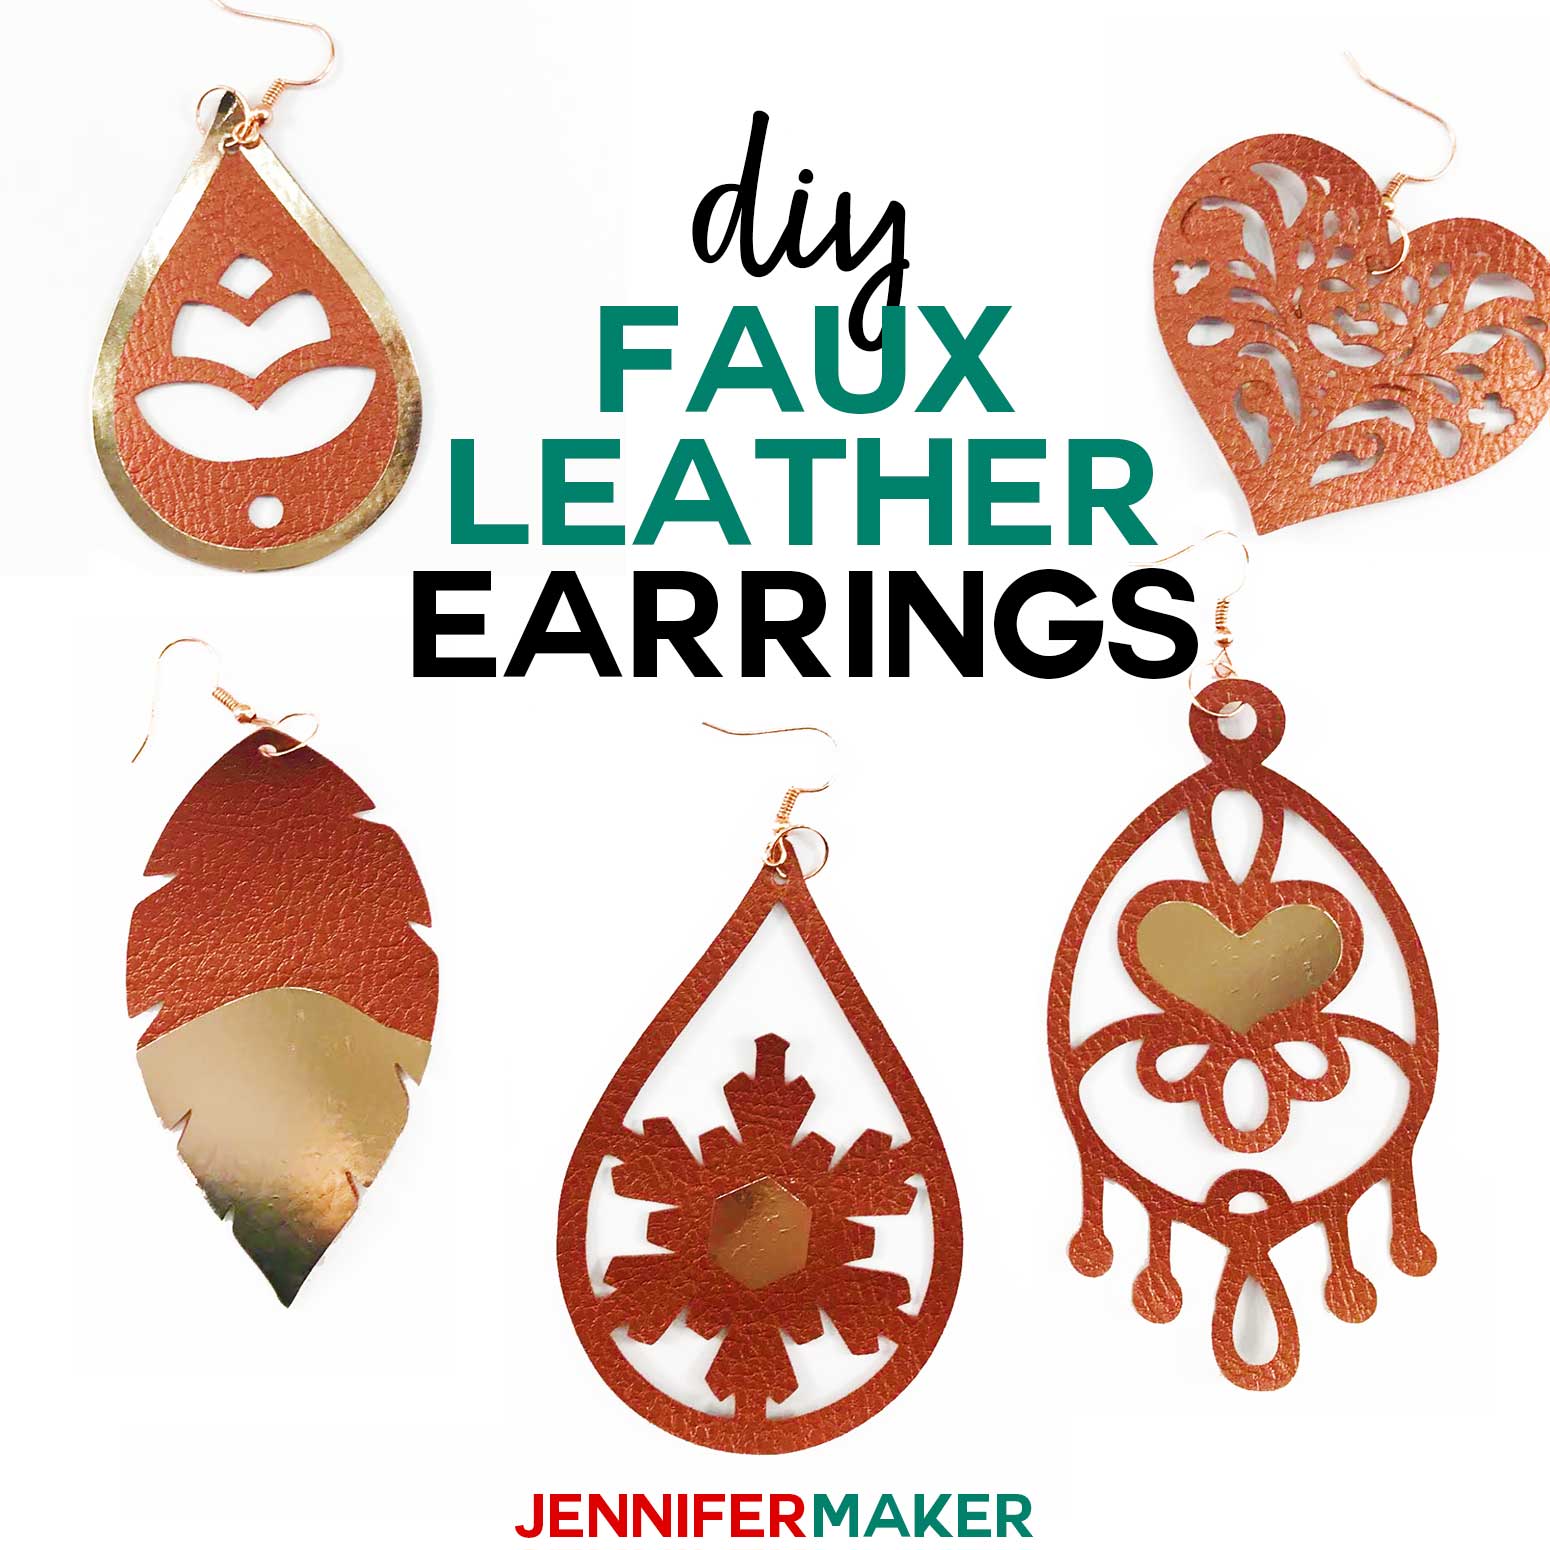 Faux Leather Earrings with Cricut - Jennifer Maker